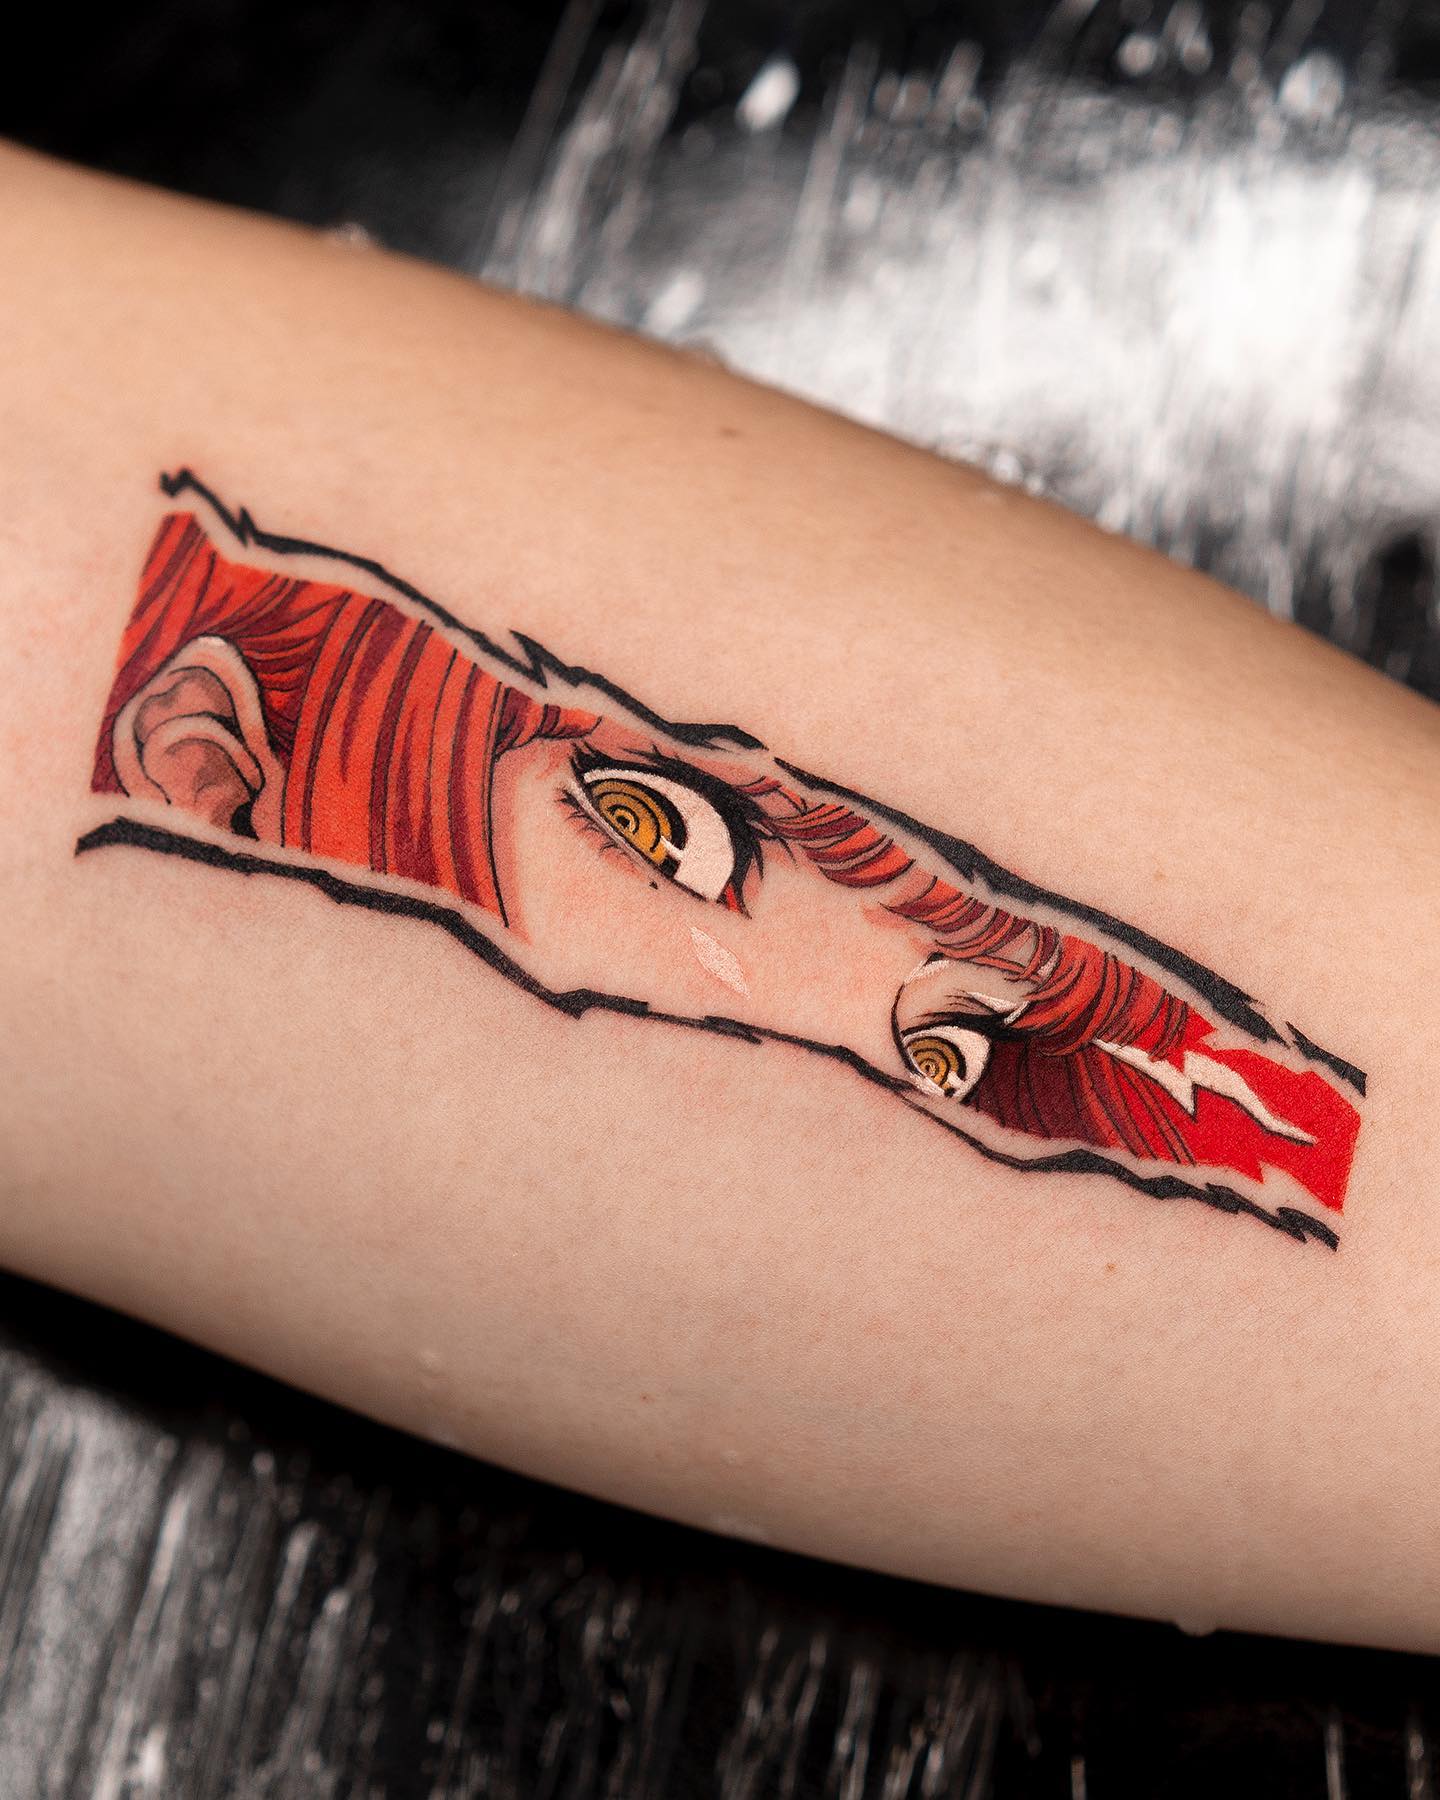 Chainsawman Tattoo Makima - Best Tattoo Ideas Gallery